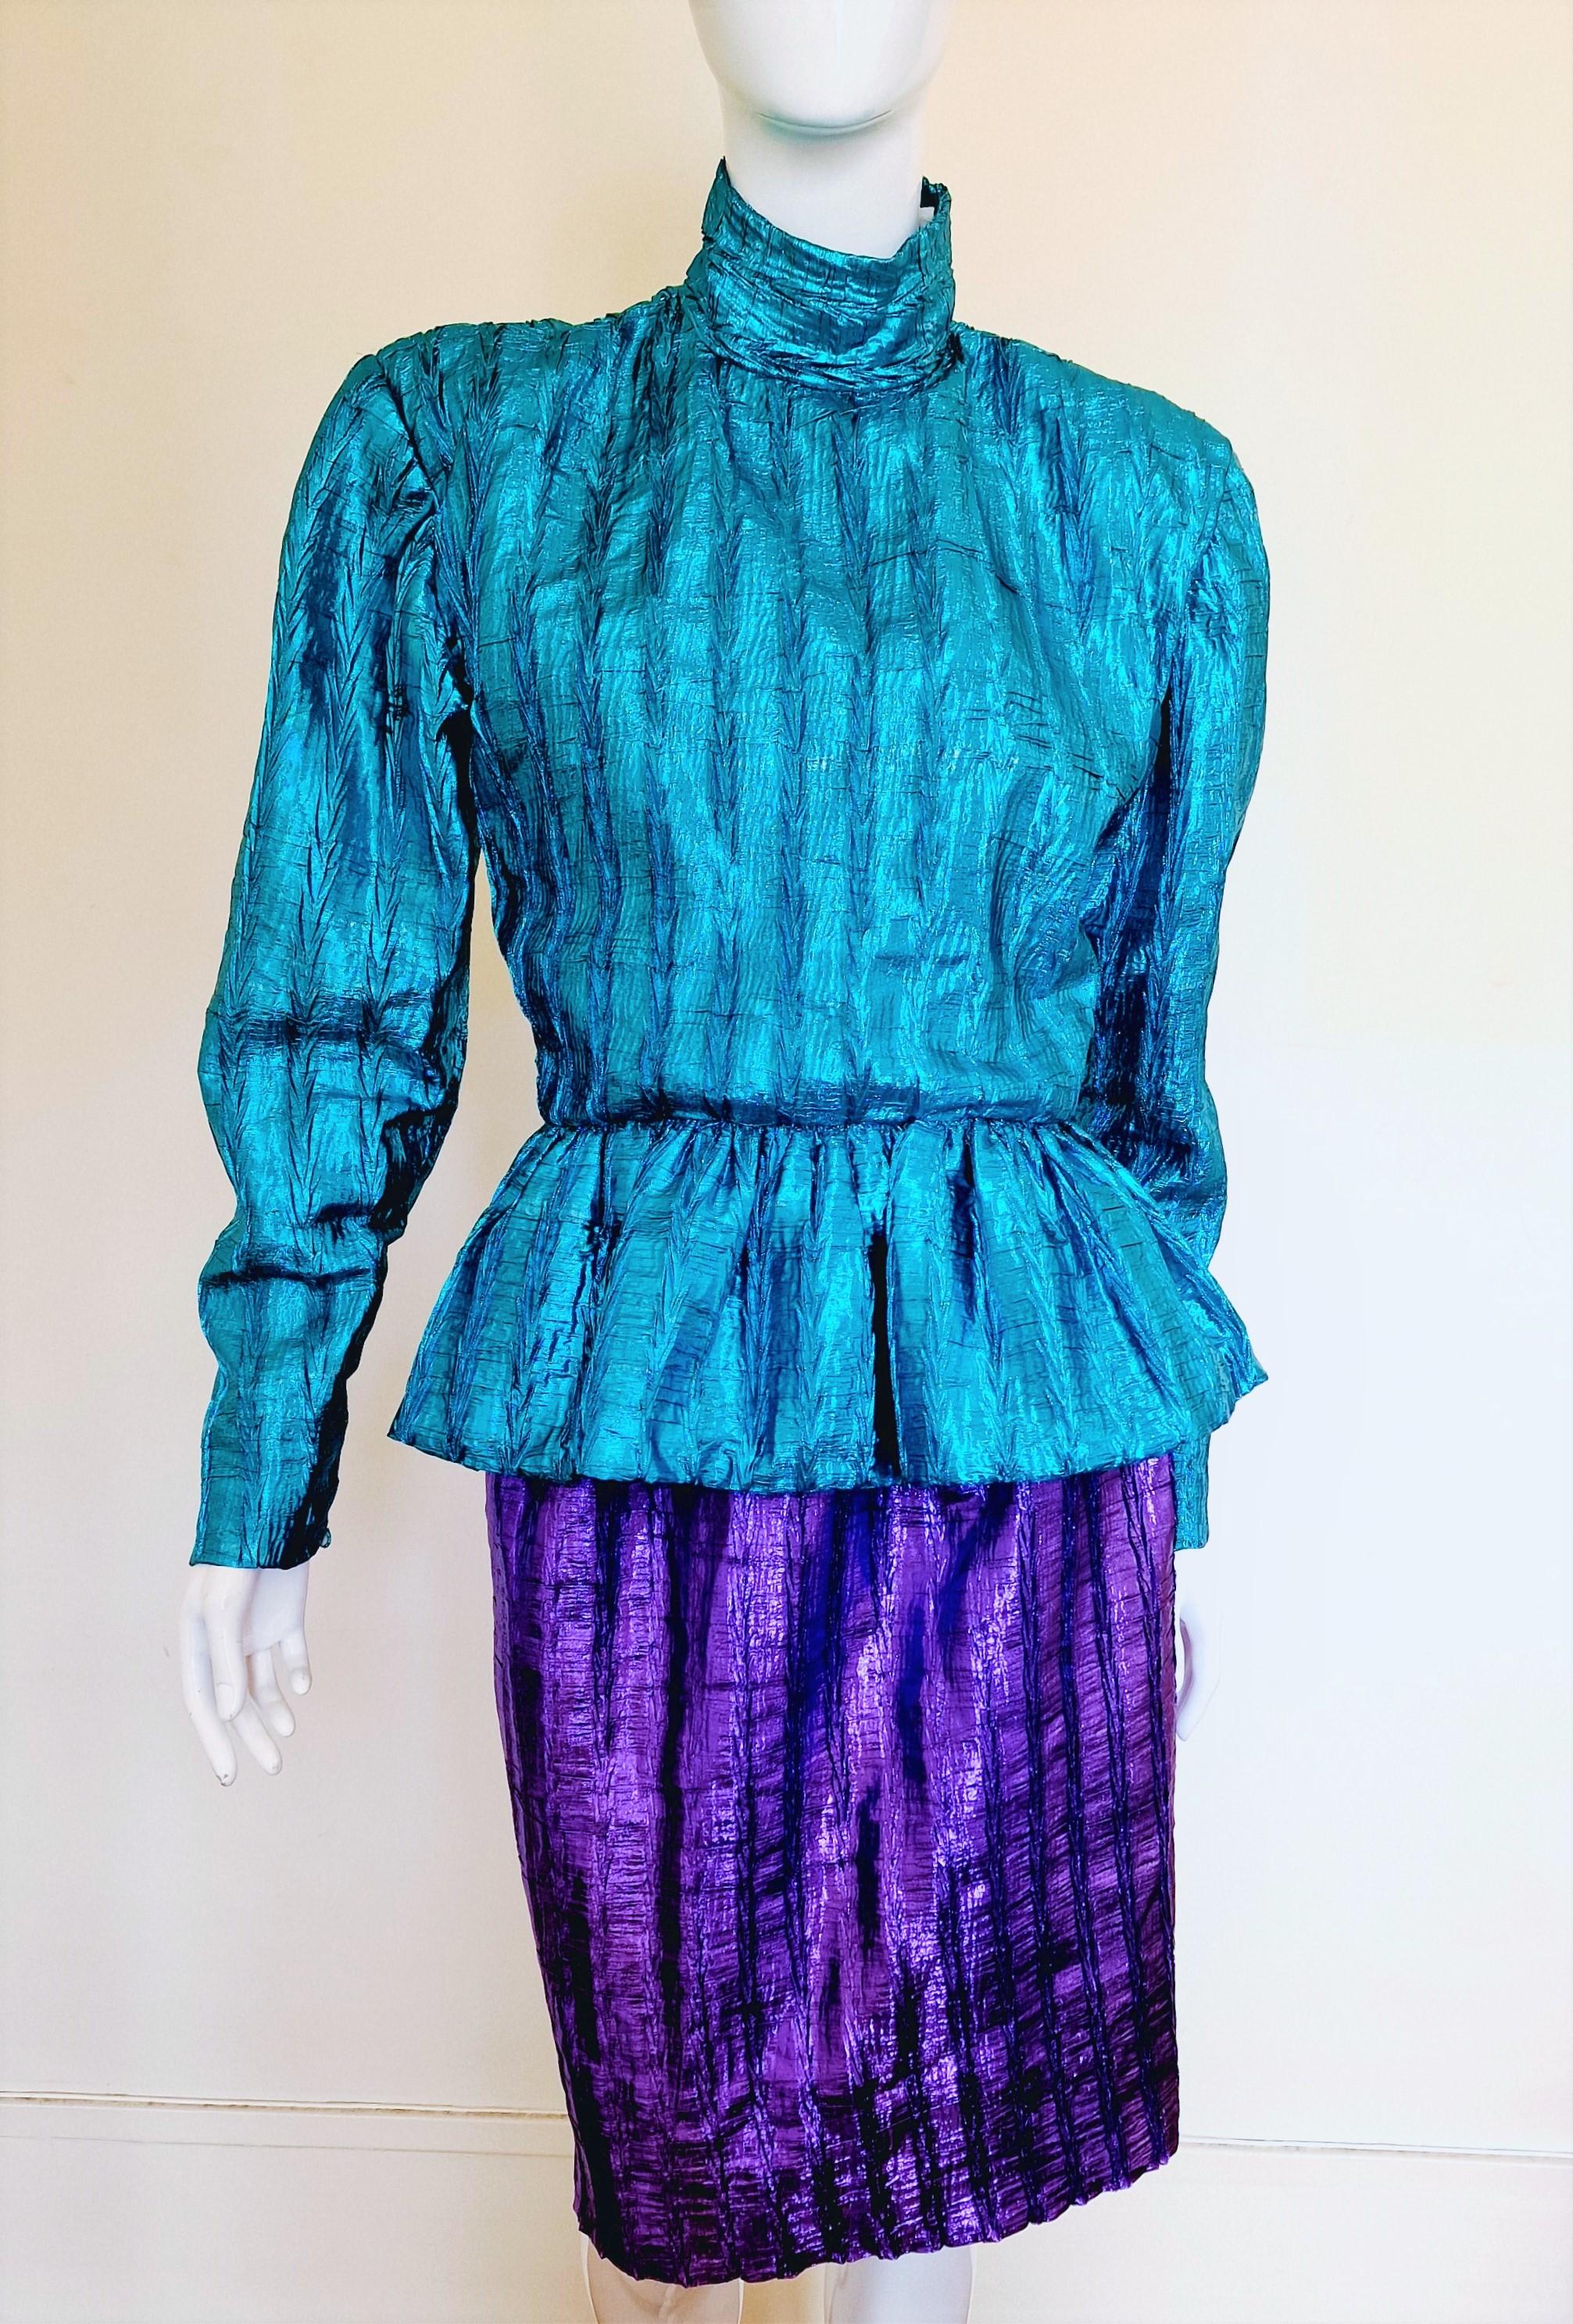 Blue Christian Dior Metal Boutique Elena Vintage 60s 70s 80s Suit Ensemble Dress For Sale